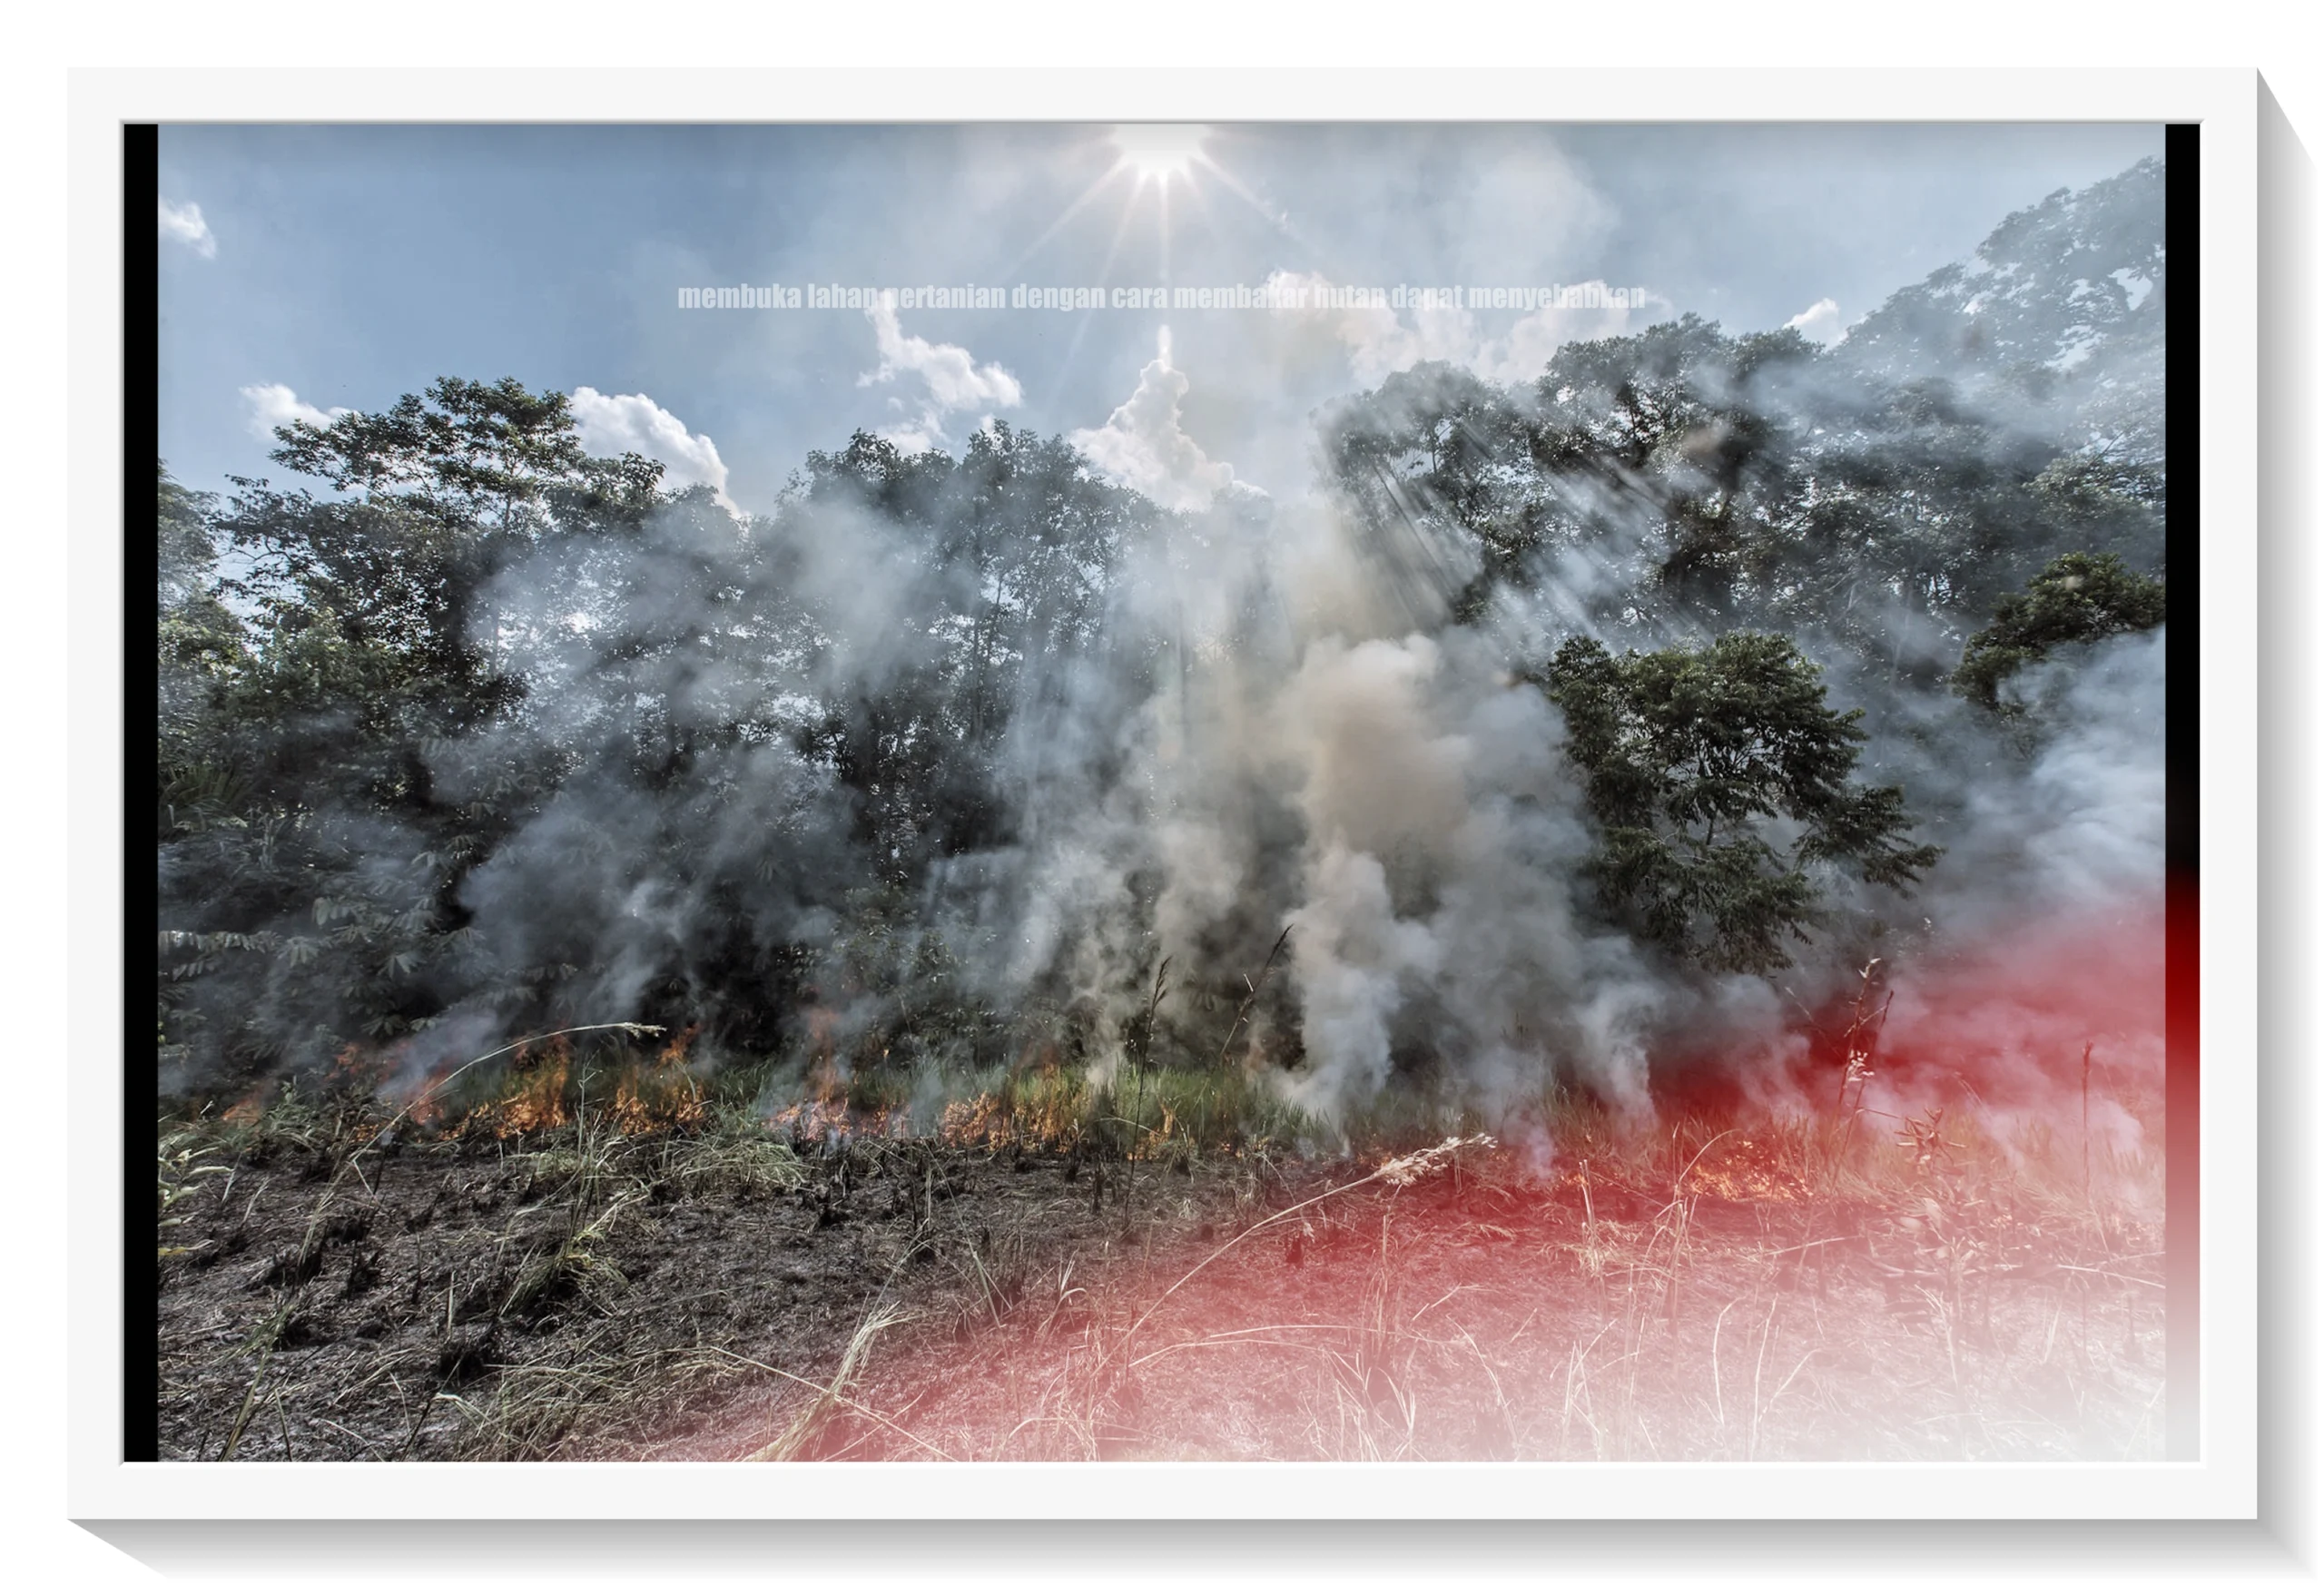 membuka lahan pertanian dengan cara membakar hutan dapat menyebabkan image